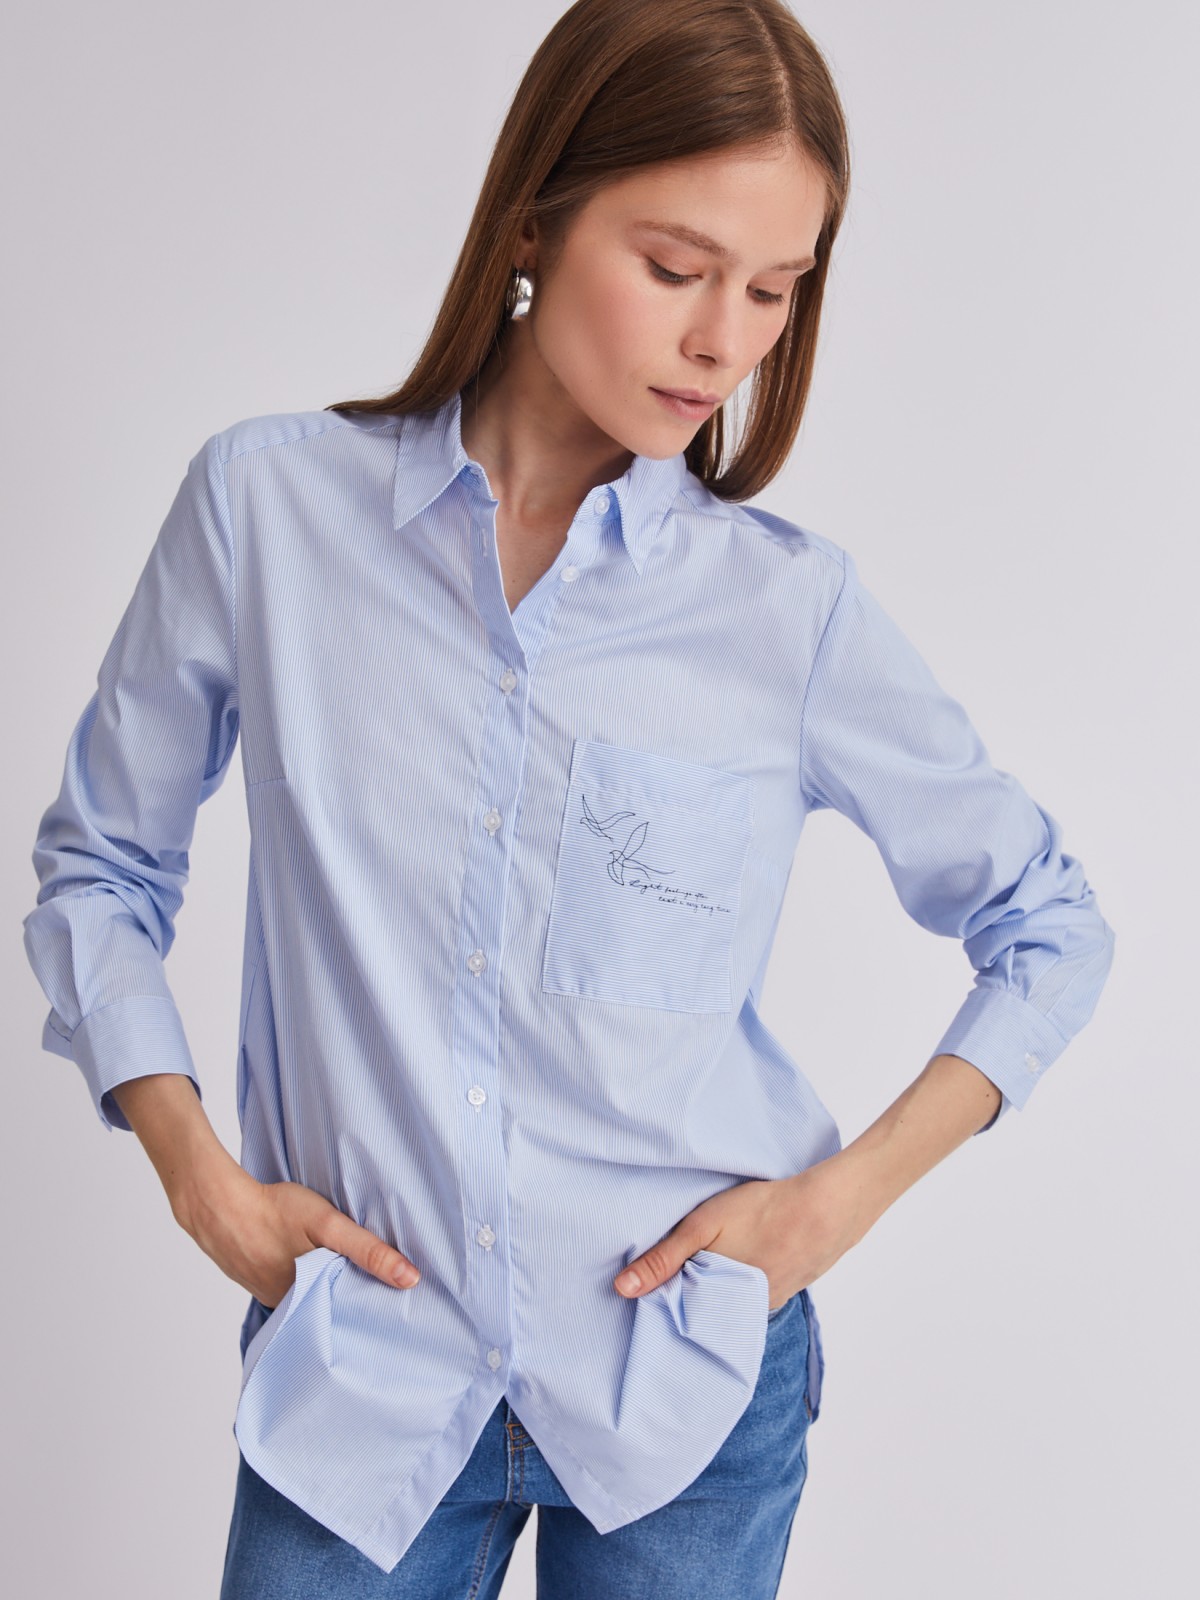 Офисная рубашка прямого силуэта с акцентом на кармане zolla 223311159242, цвет светло-голубой, размер M - фото 1